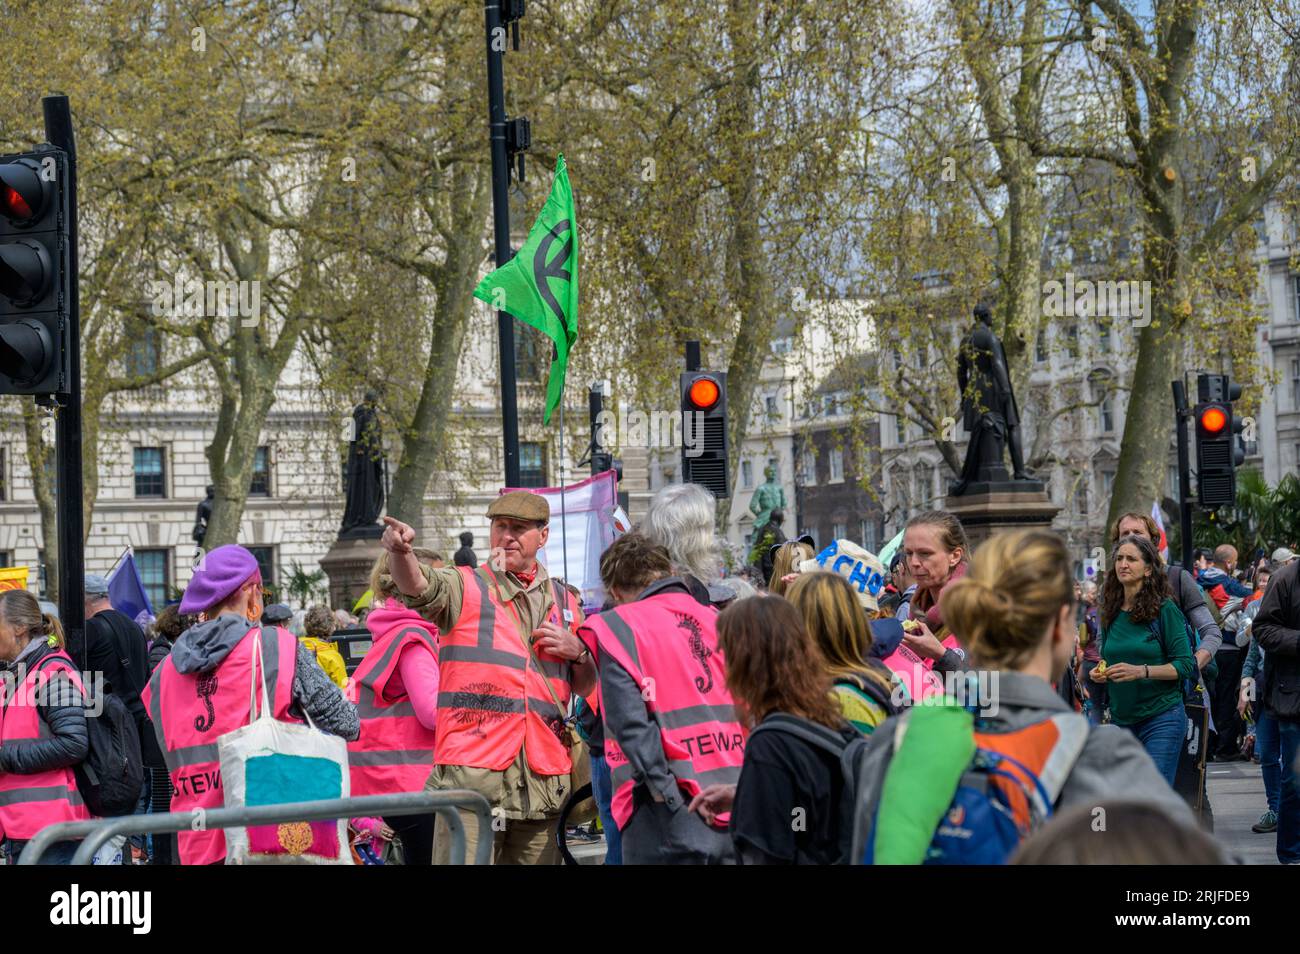 LONDRA - 22 aprile 2023: Il team di sicurezza di Londra: Gli steward con giacche ad alta visibilità svolgono un ruolo fondamentale nel garantire l'ordine e la sicurezza presso i protes XR Foto Stock